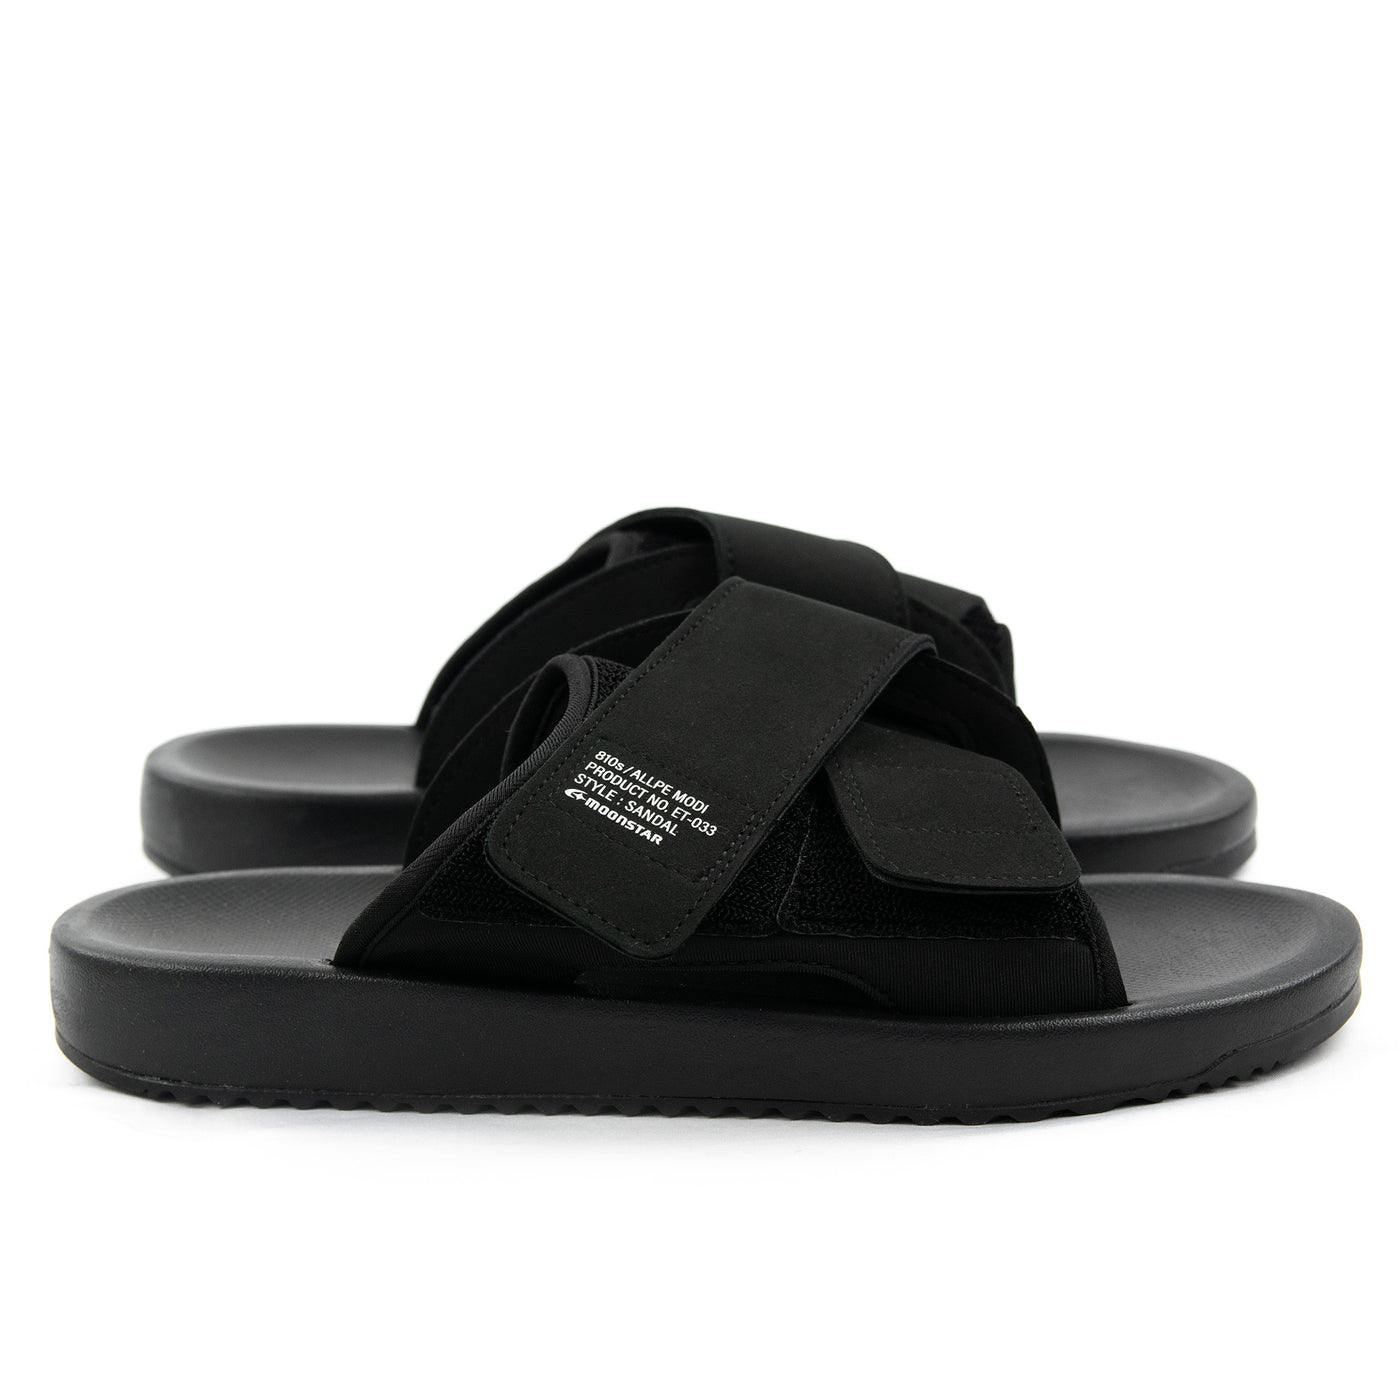 Moonstar 810's Allpe Modi Black Slip-on Sandals